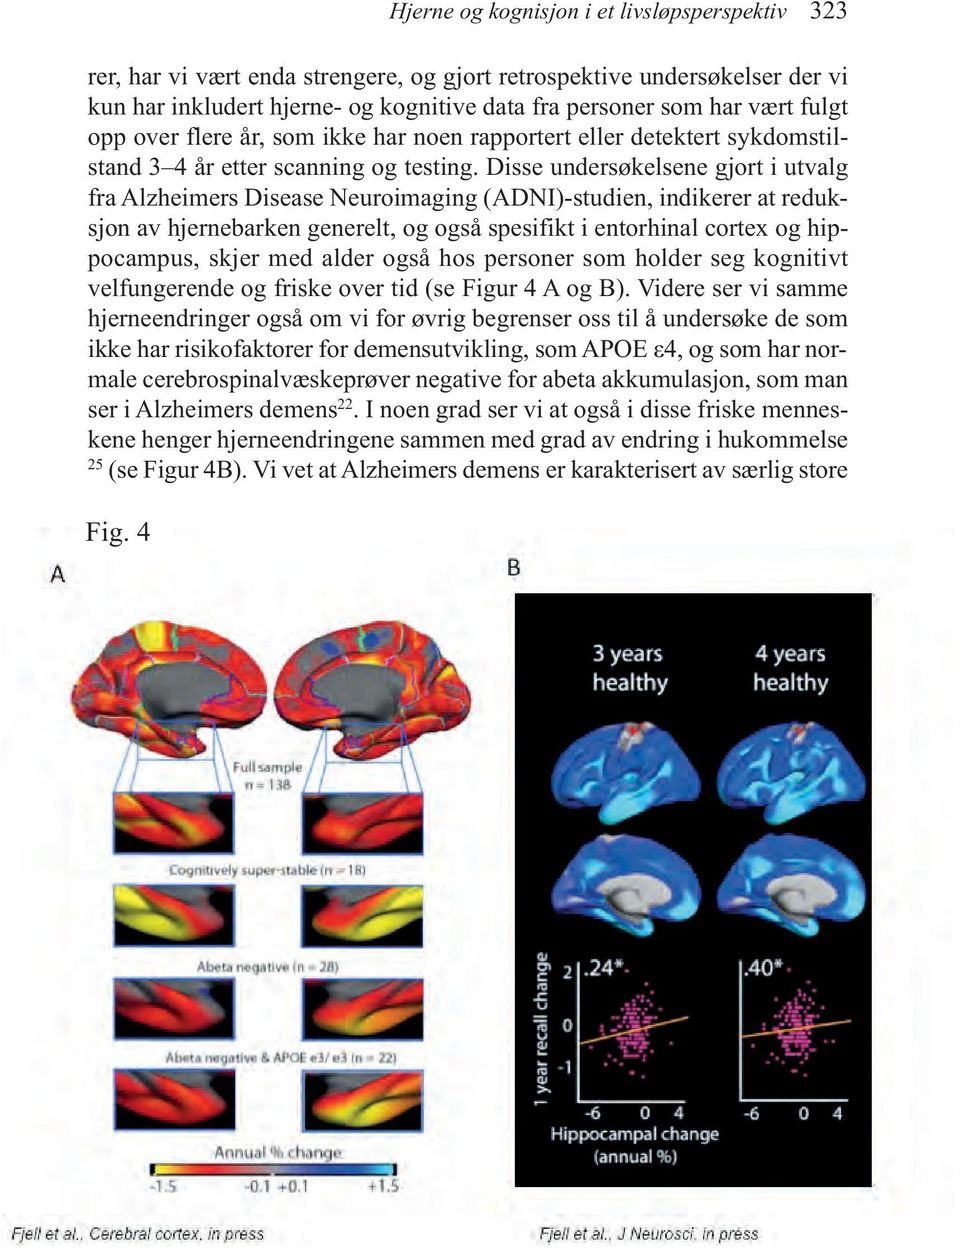 Disse undersøkelsene gjort i utvalg fra Alzheimers Disease Neuroimaging (ADNI)-studien, indikerer at reduksjon av hjernebarken generelt, og også spesifikt i entorhinal cortex og hippocampus, skjer